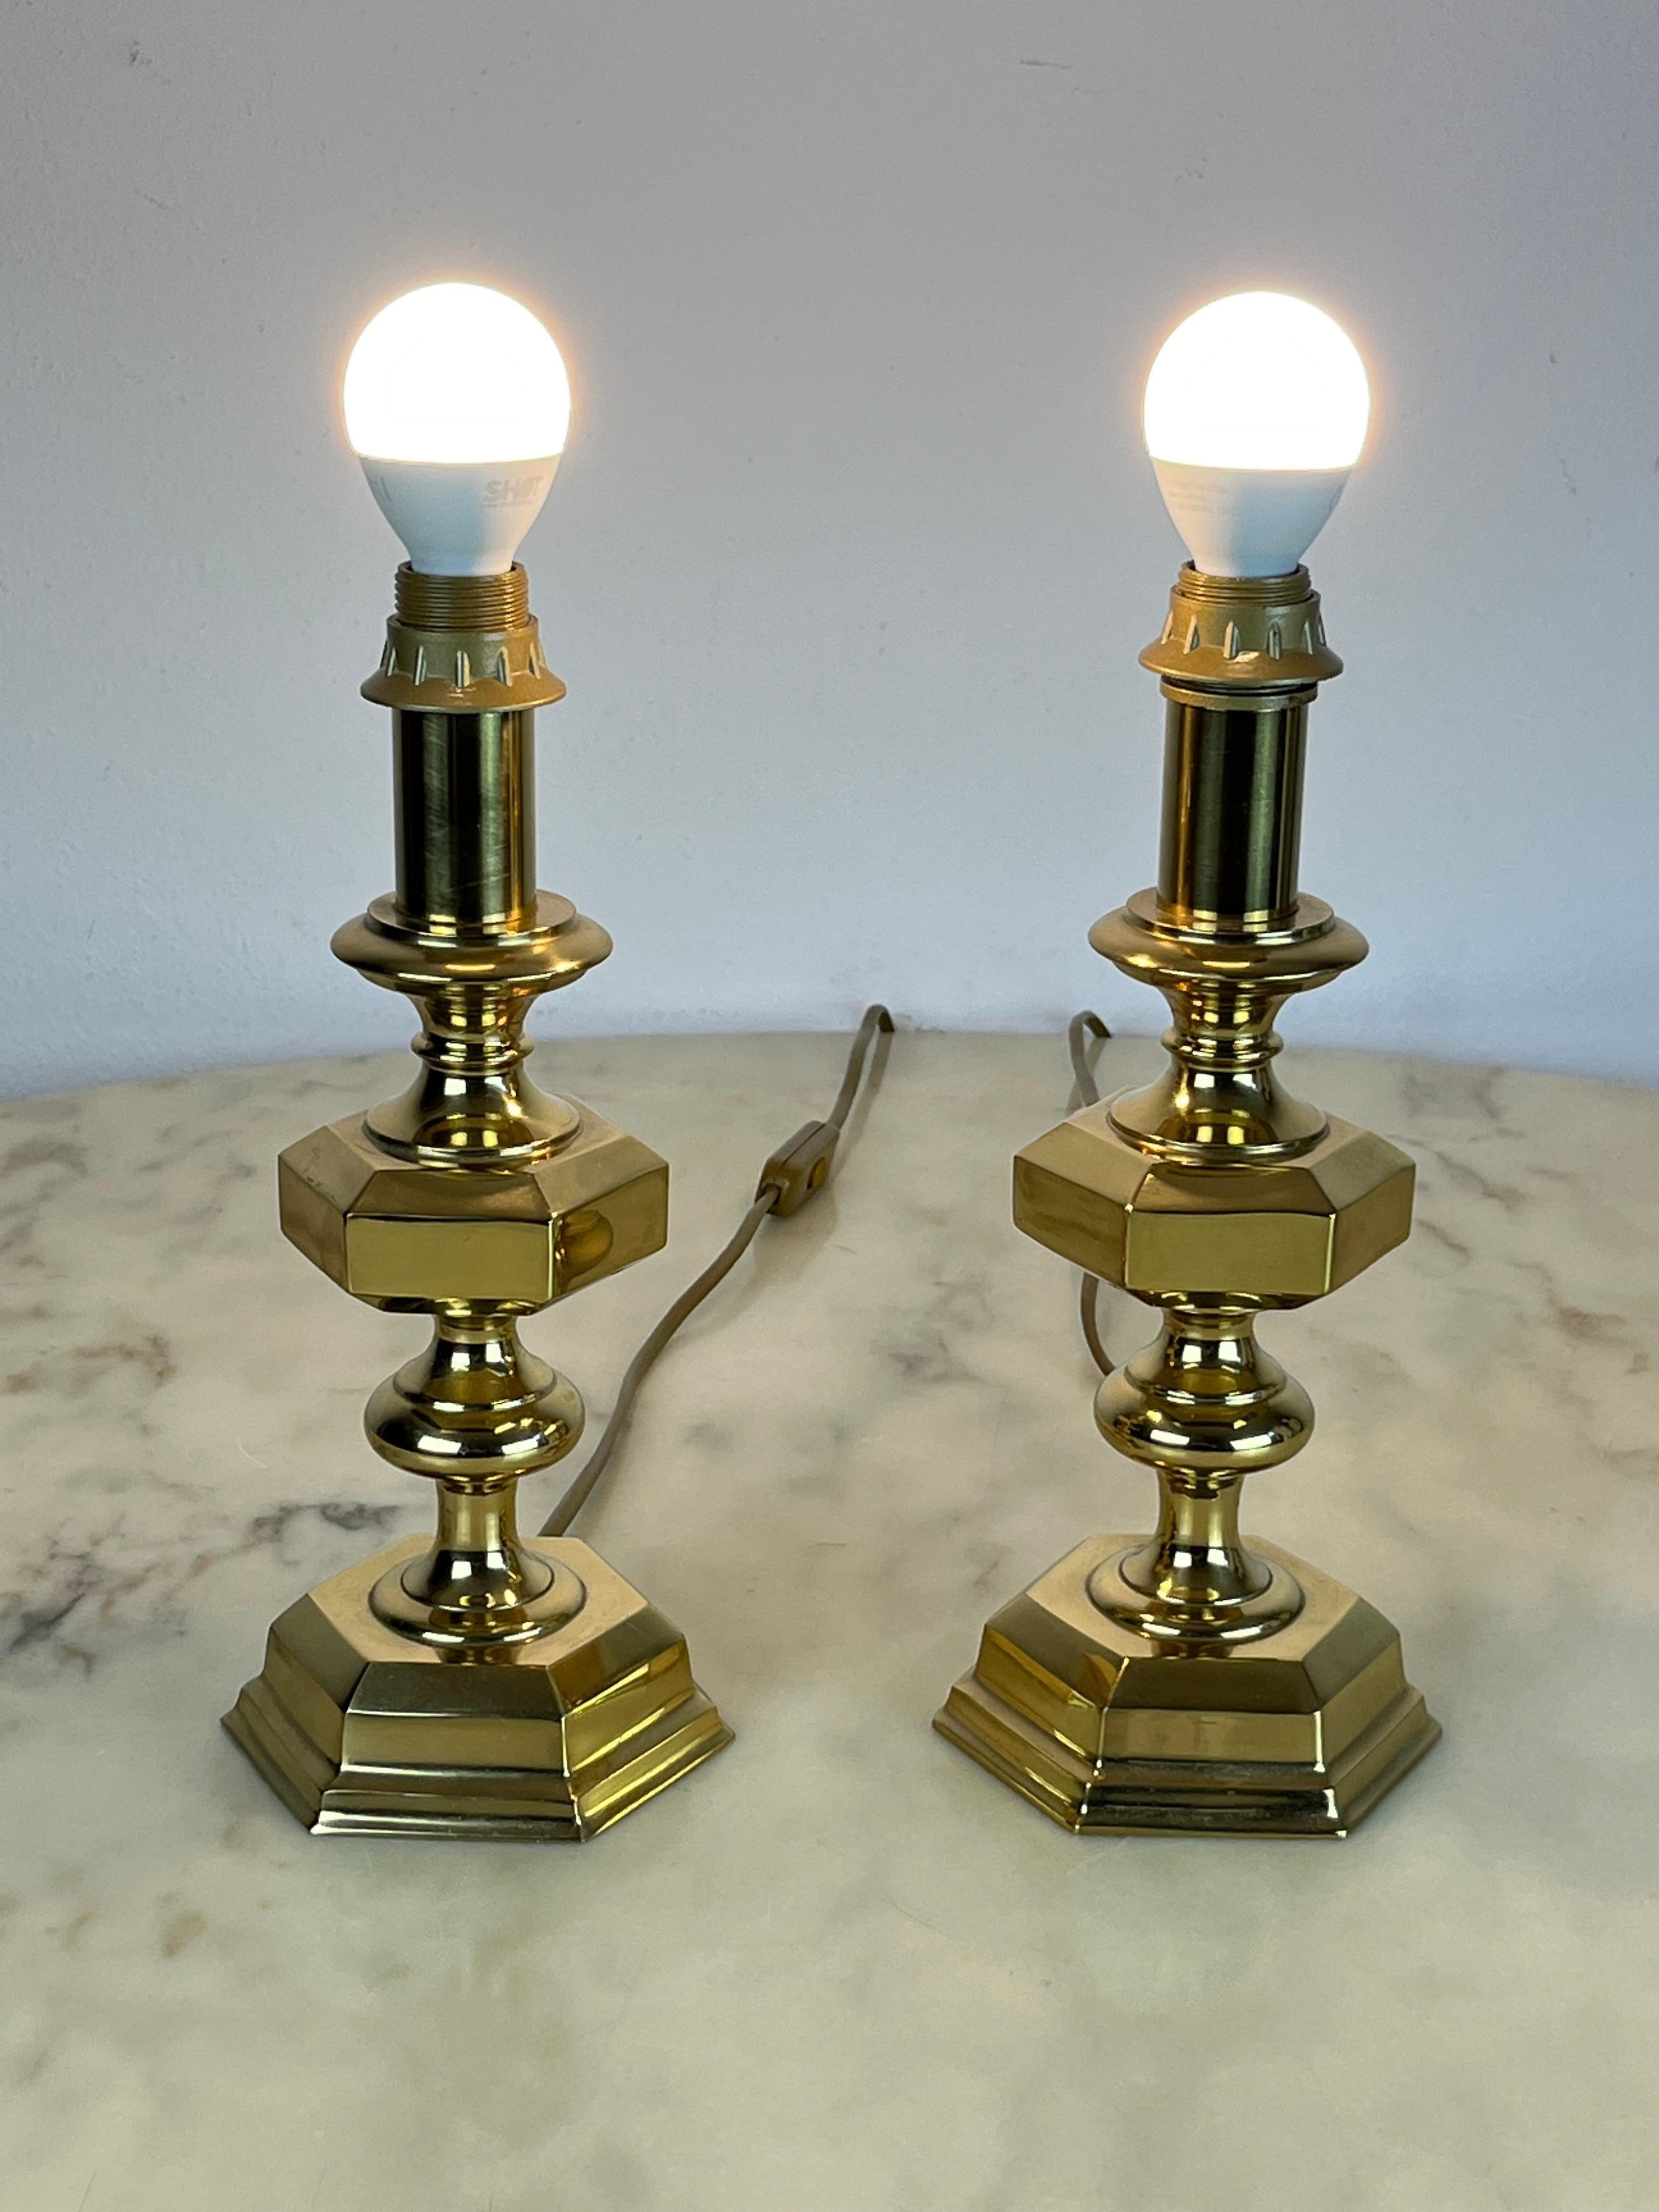 Paar italienische Messing-Tischlampen, 1980er Jahre
Sie wurden in einer noblen Wohnung gefunden, sind intakt und funktionieren. Sie können in einem Schlafzimmer auf Nachttischen aufgestellt werden. Sie messen 27,5 cm in der Höhe und Basis mit einem